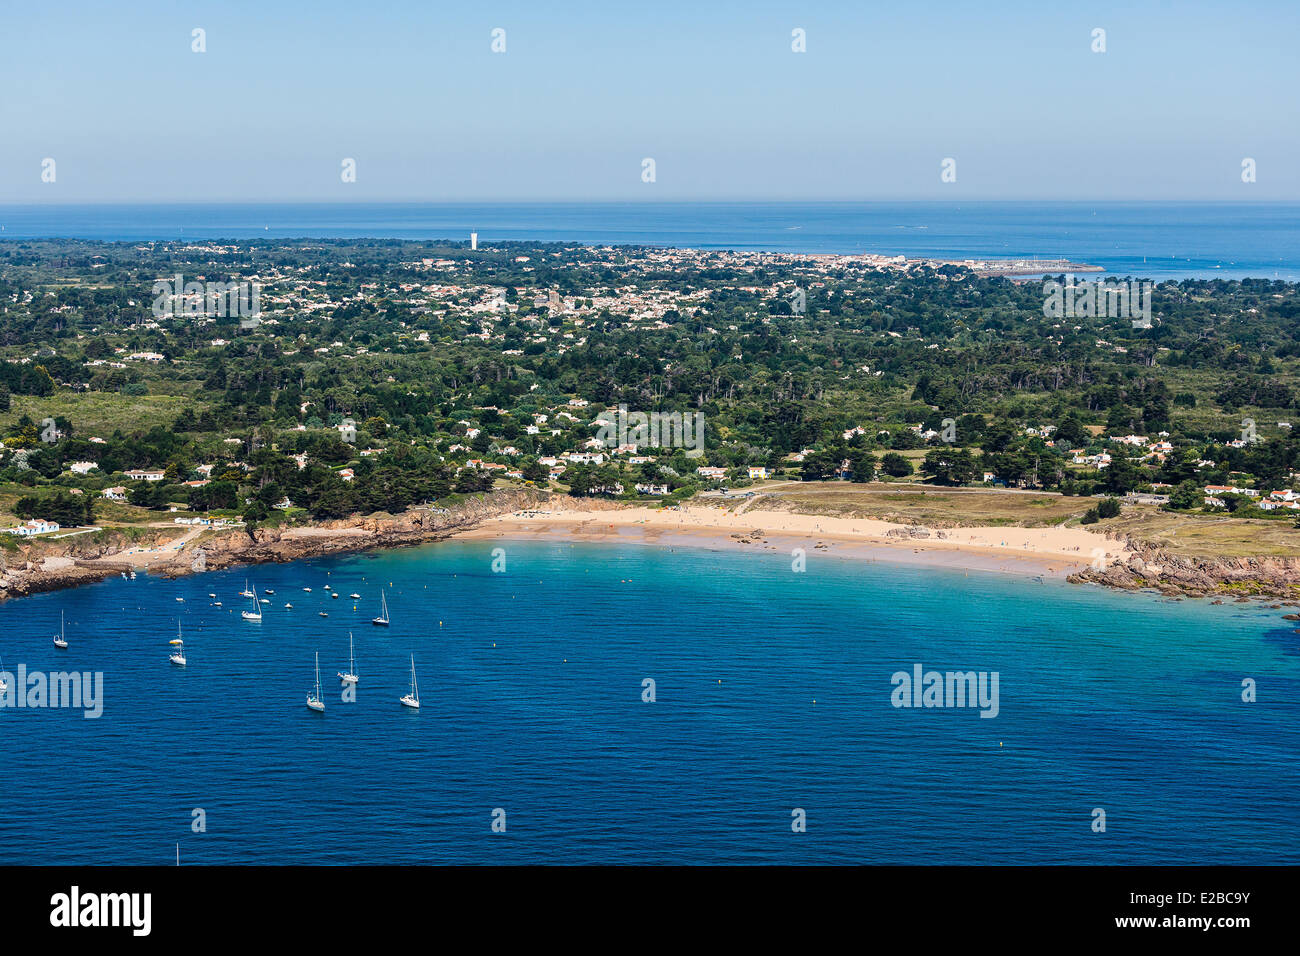 France, Vendee, Ile d'Yeu, Vieilles beach (aerial view) Stock Photo